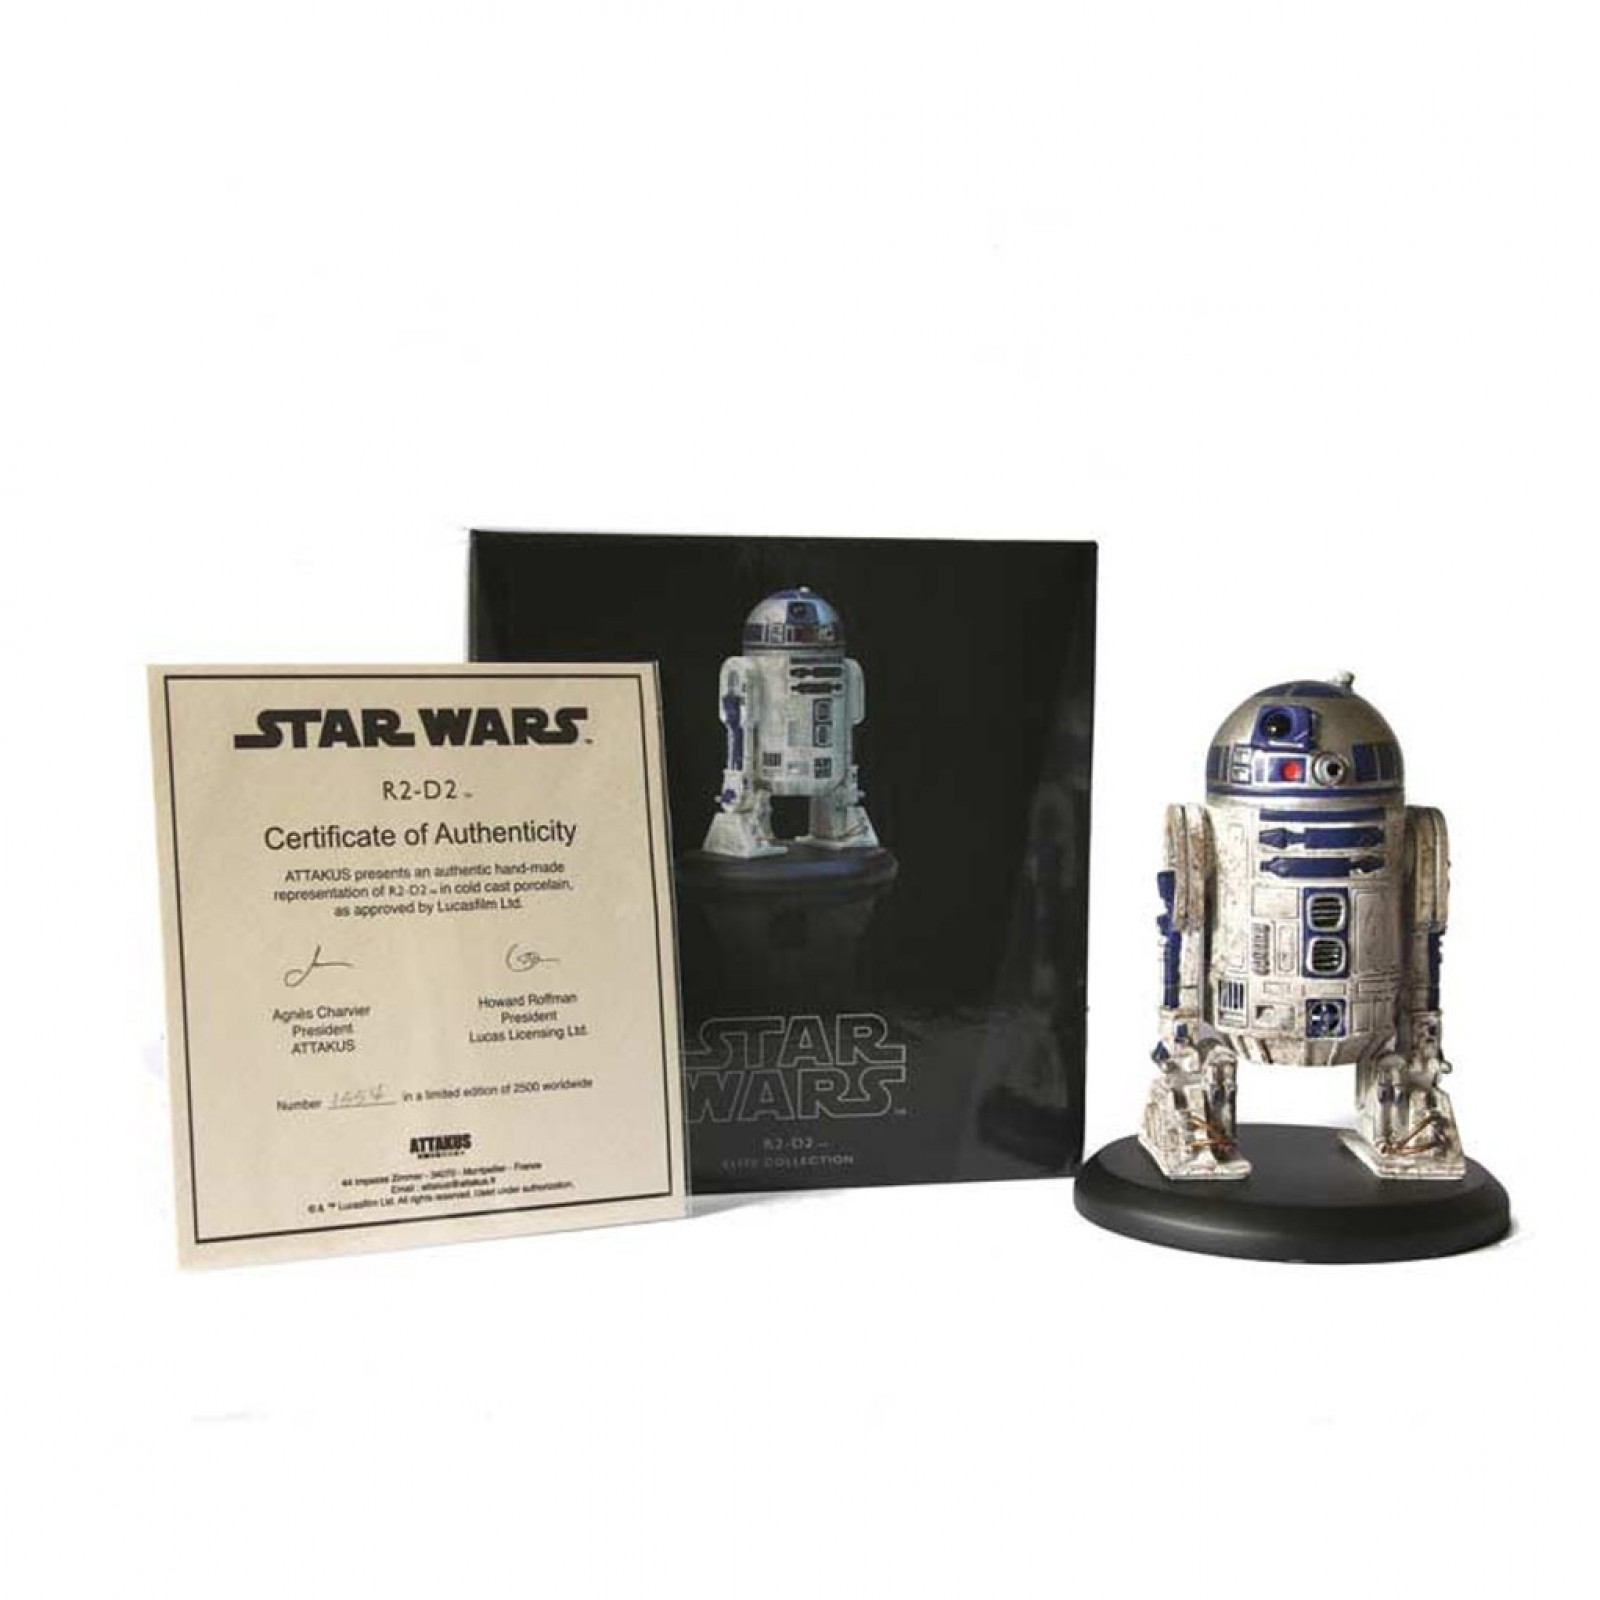 con certificado de autenticidad Star Wars Anh Menta en caja Attakus R2-D2 Estatua Figura Jp Edition LE200 2001 